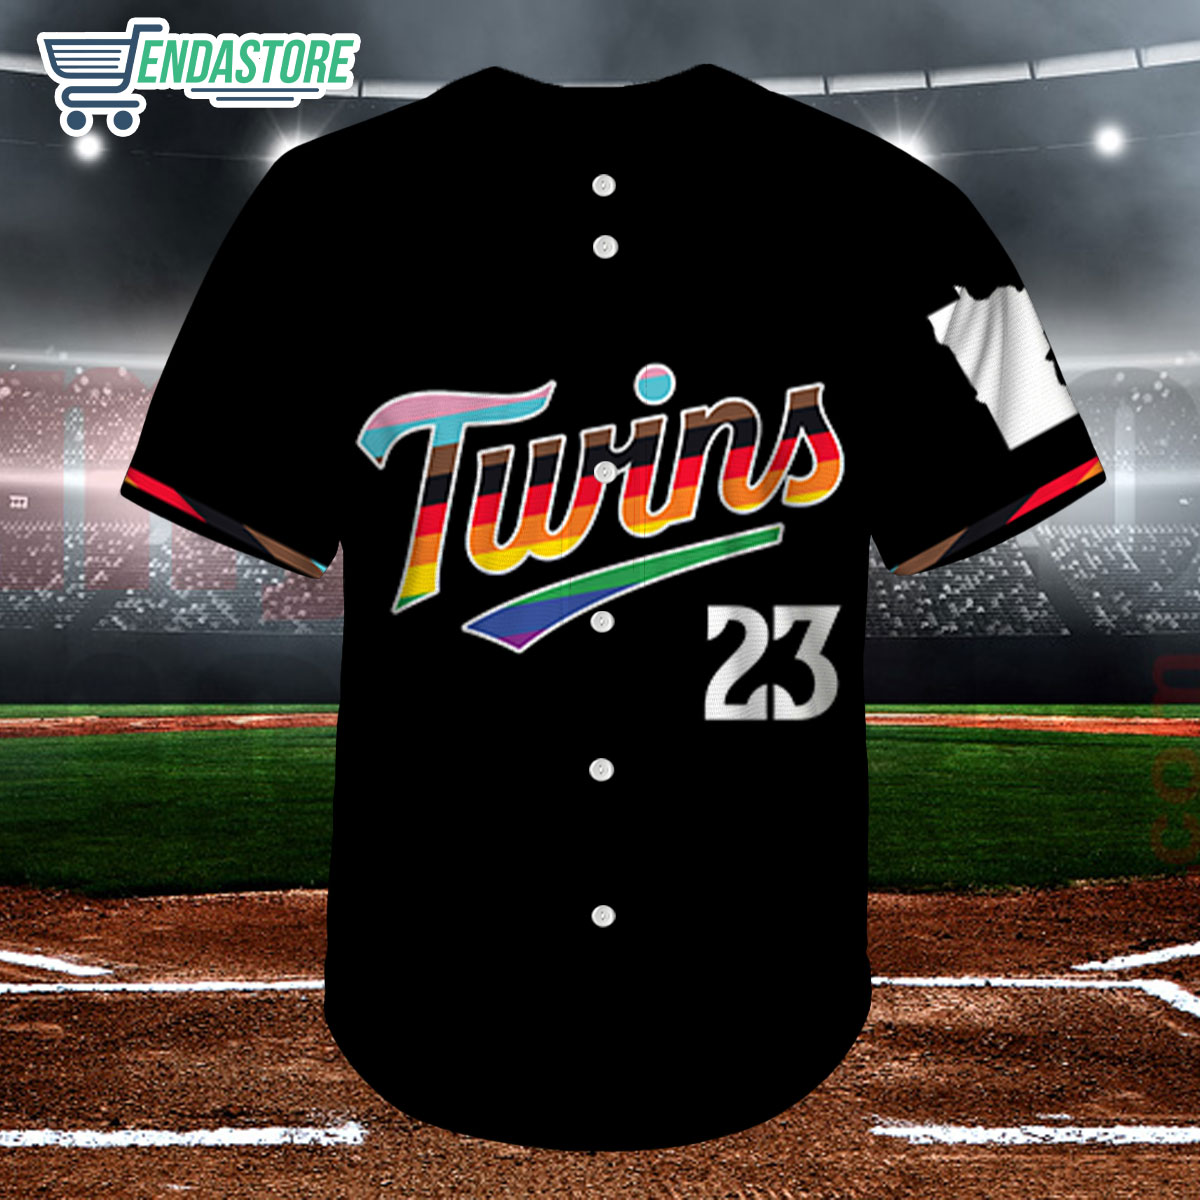 Minnesota Twins Pride Night Twins LGBTQ 2023 Baseball Jersey Shirt 